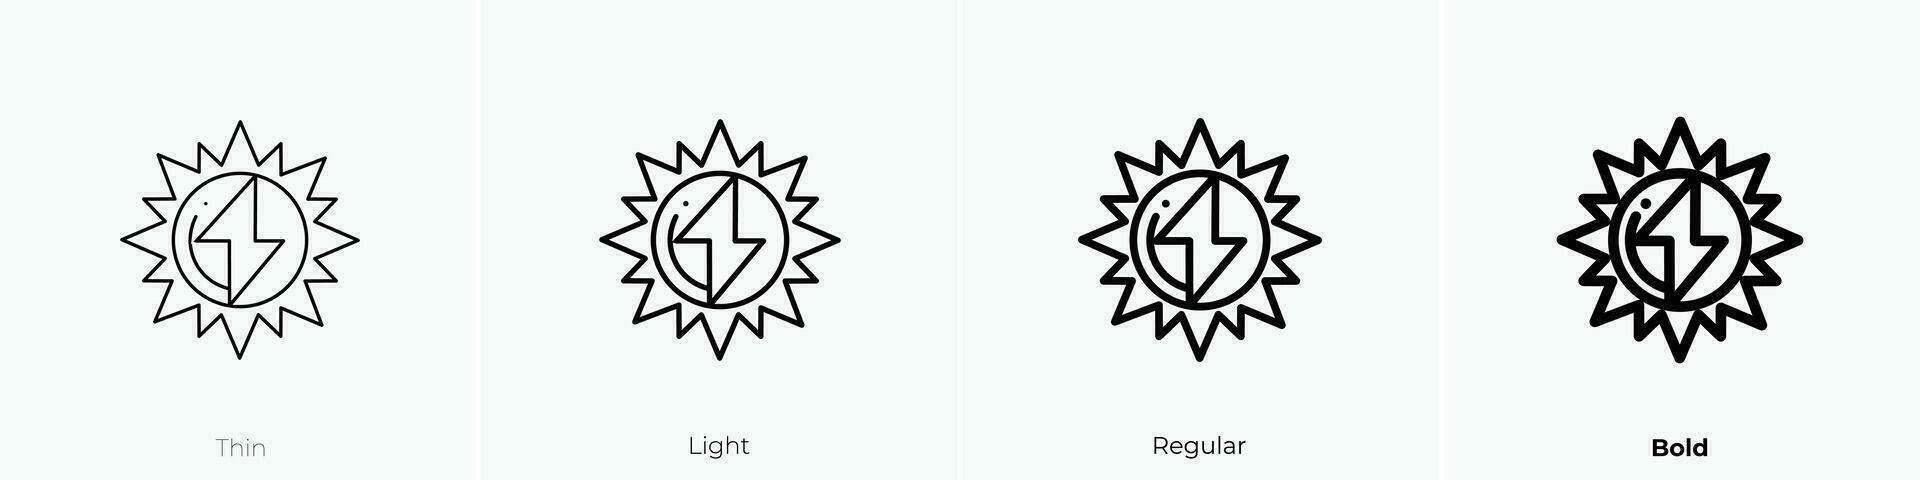 Sonne 2 Symbol. dünn, Licht, regulär und Fett gedruckt Stil Design isoliert auf Weiß Hintergrund vektor